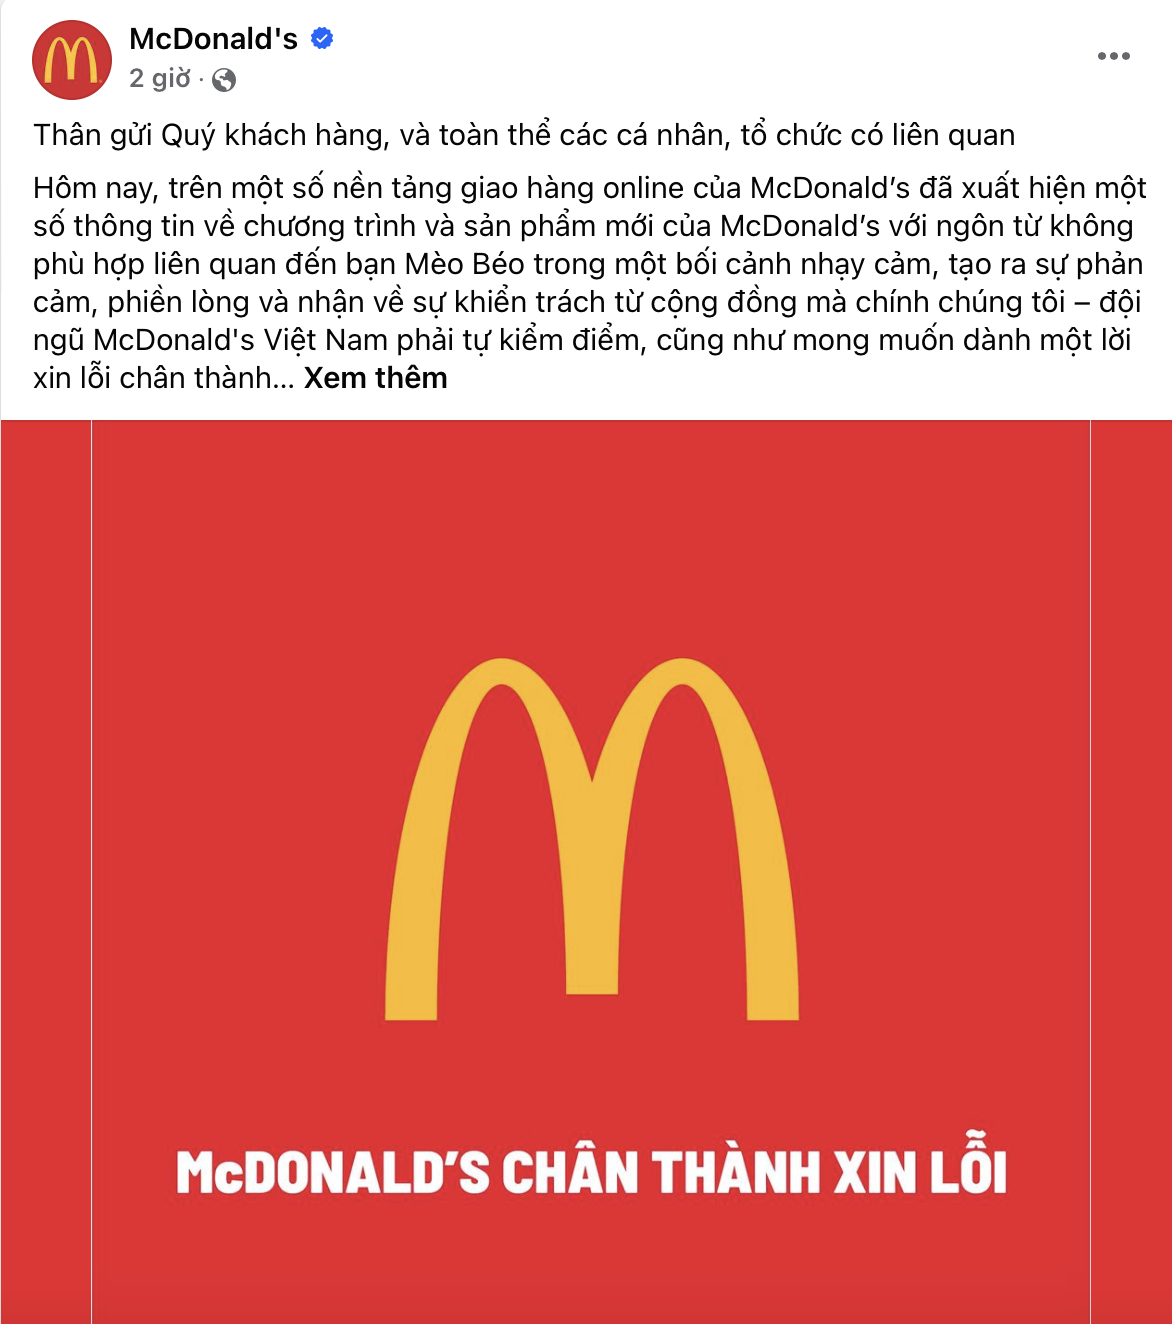 McDonald's xin lỗi sau khi nhận nhiều lời chỉ trích vì việc quảng cáo phản cảm